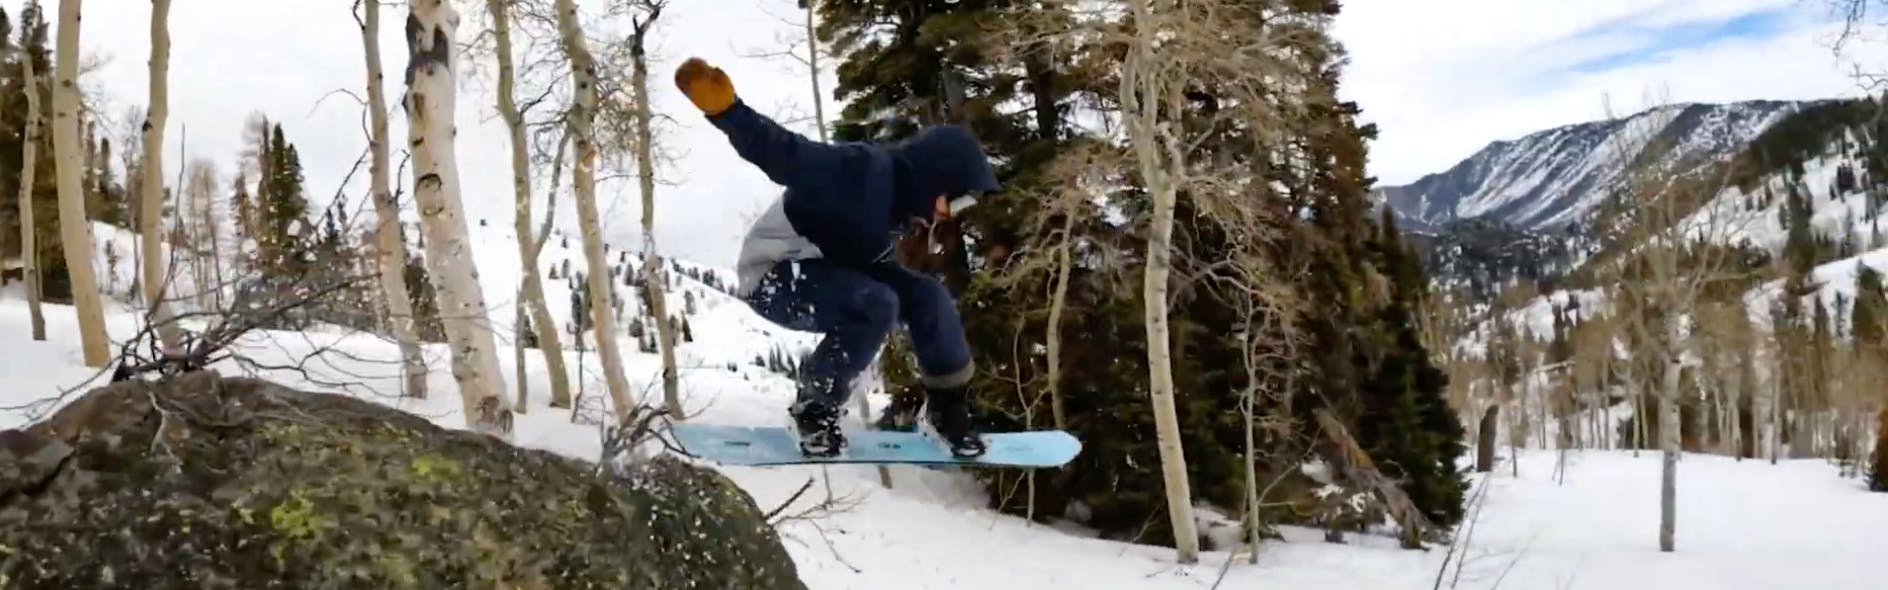 Snowboard Expert Matthew Kaminski jumping off a boulder with the 2023 K2 Passport snowboard